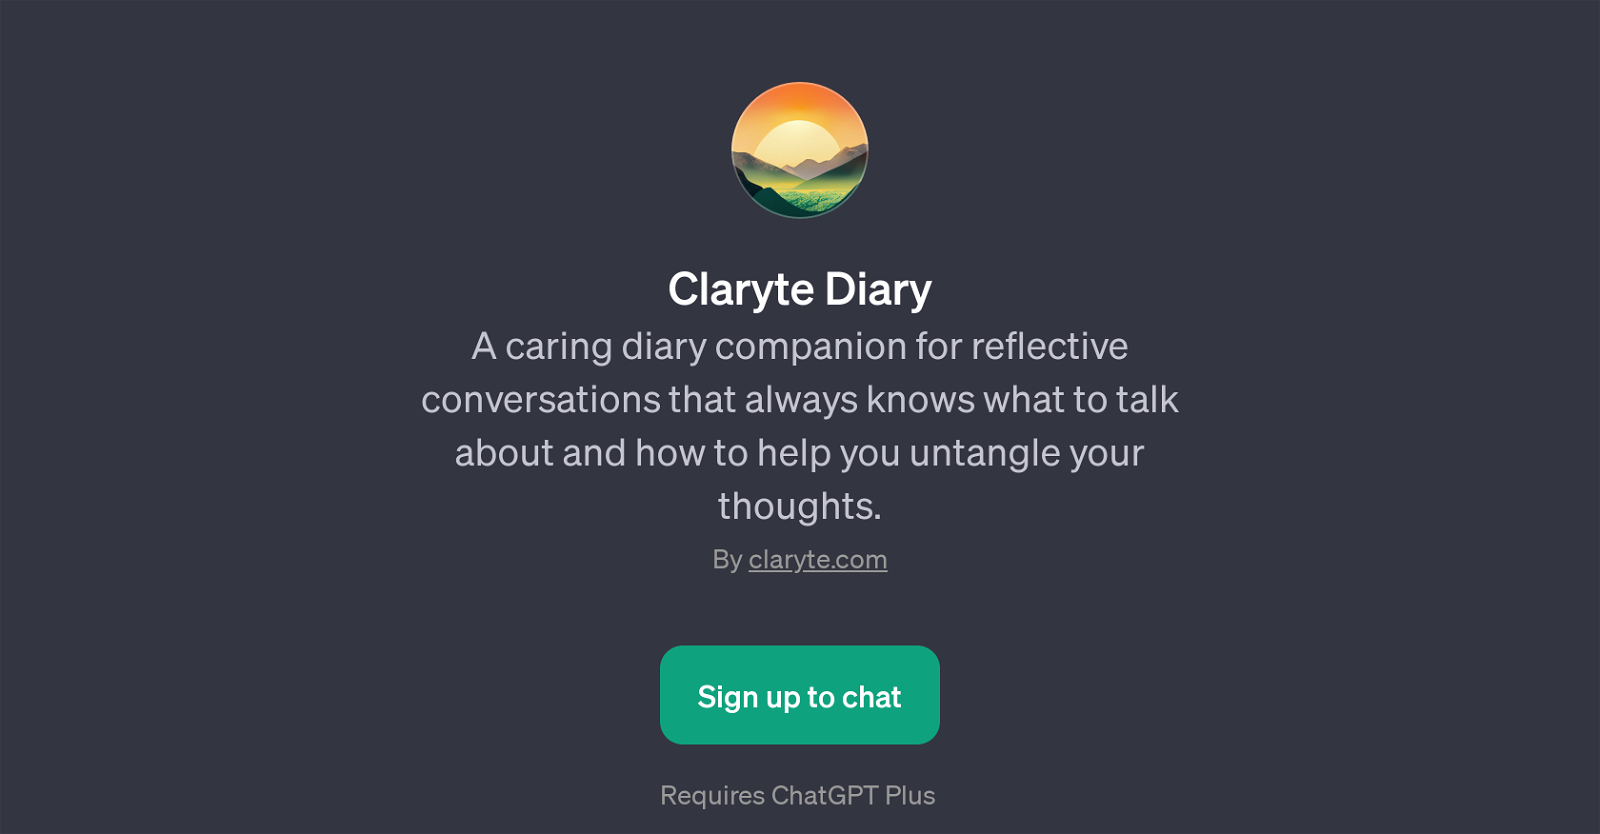 Claryte Diary website